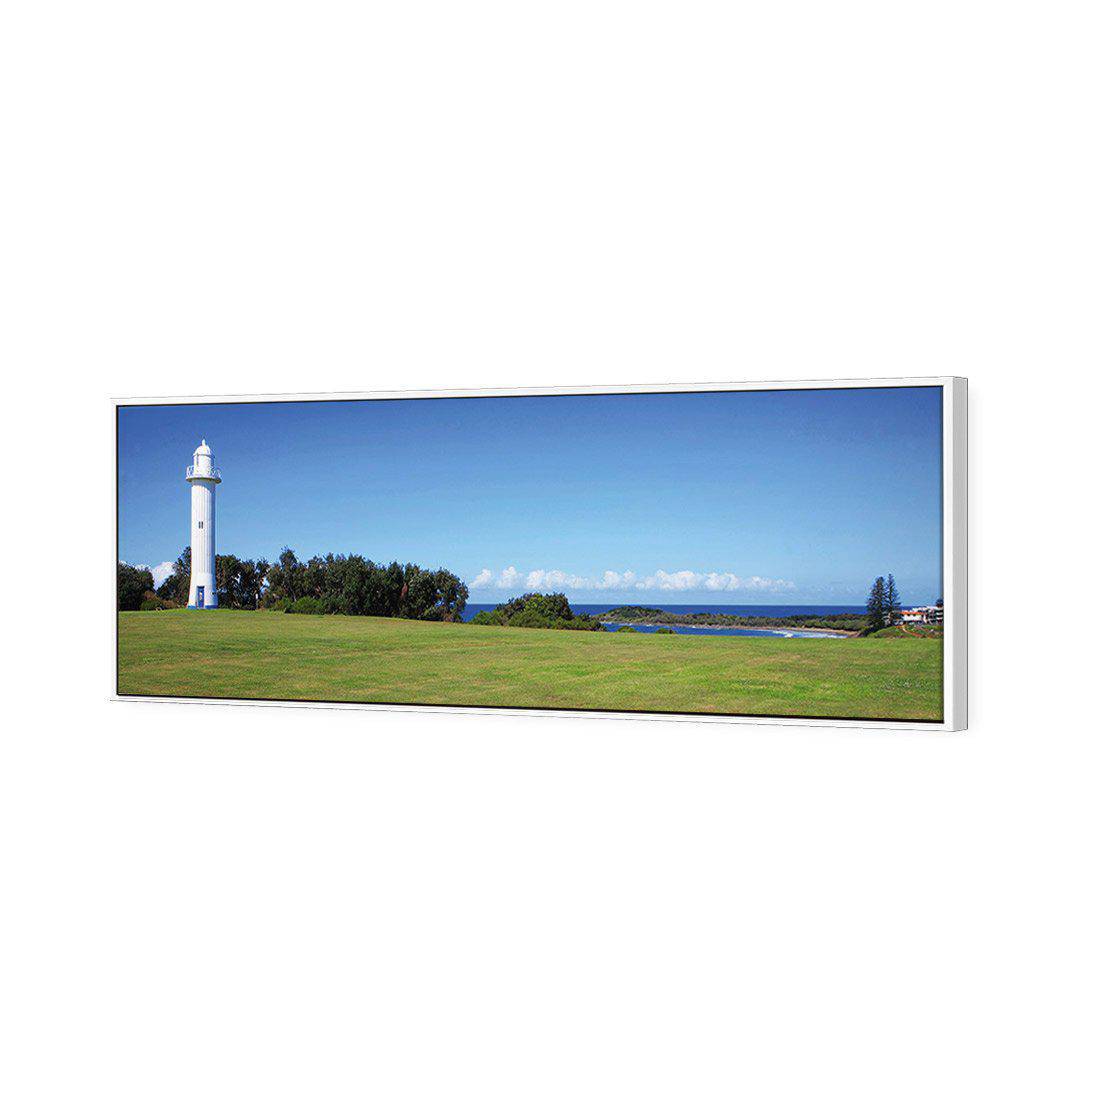 Yamba Lighthouse Canvas Art-Canvas-Wall Art Designs-60x20cm-Canvas - White Frame-Wall Art Designs